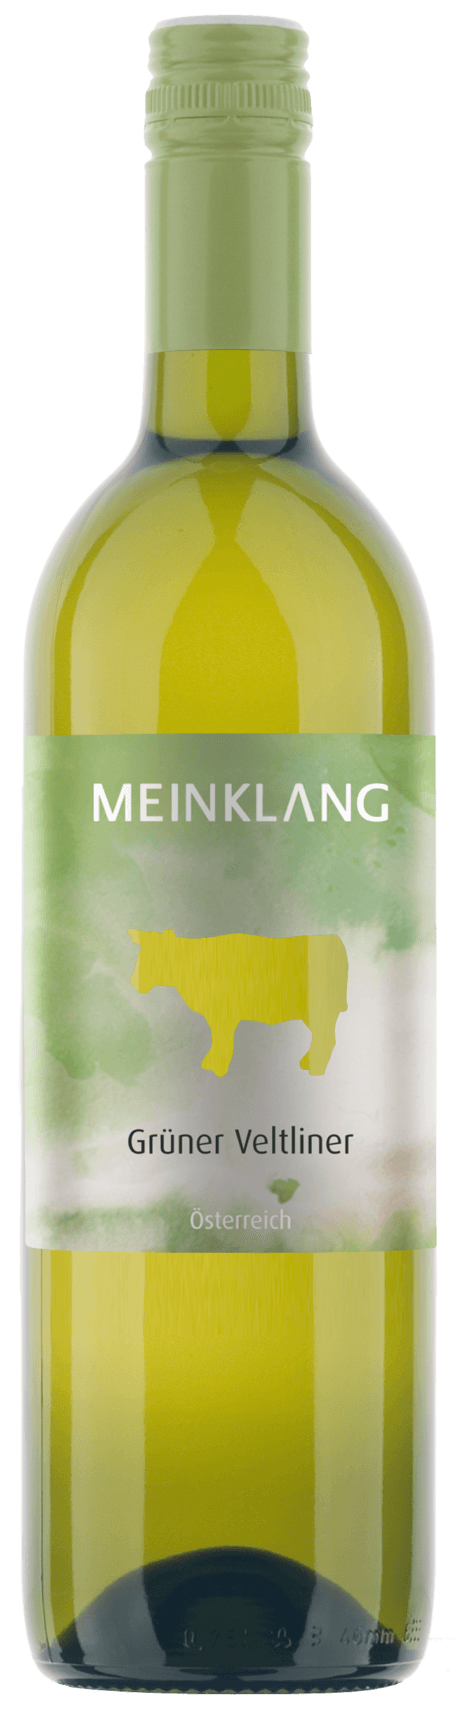 A wine product picture of Meinklang Grüner Veltliner}